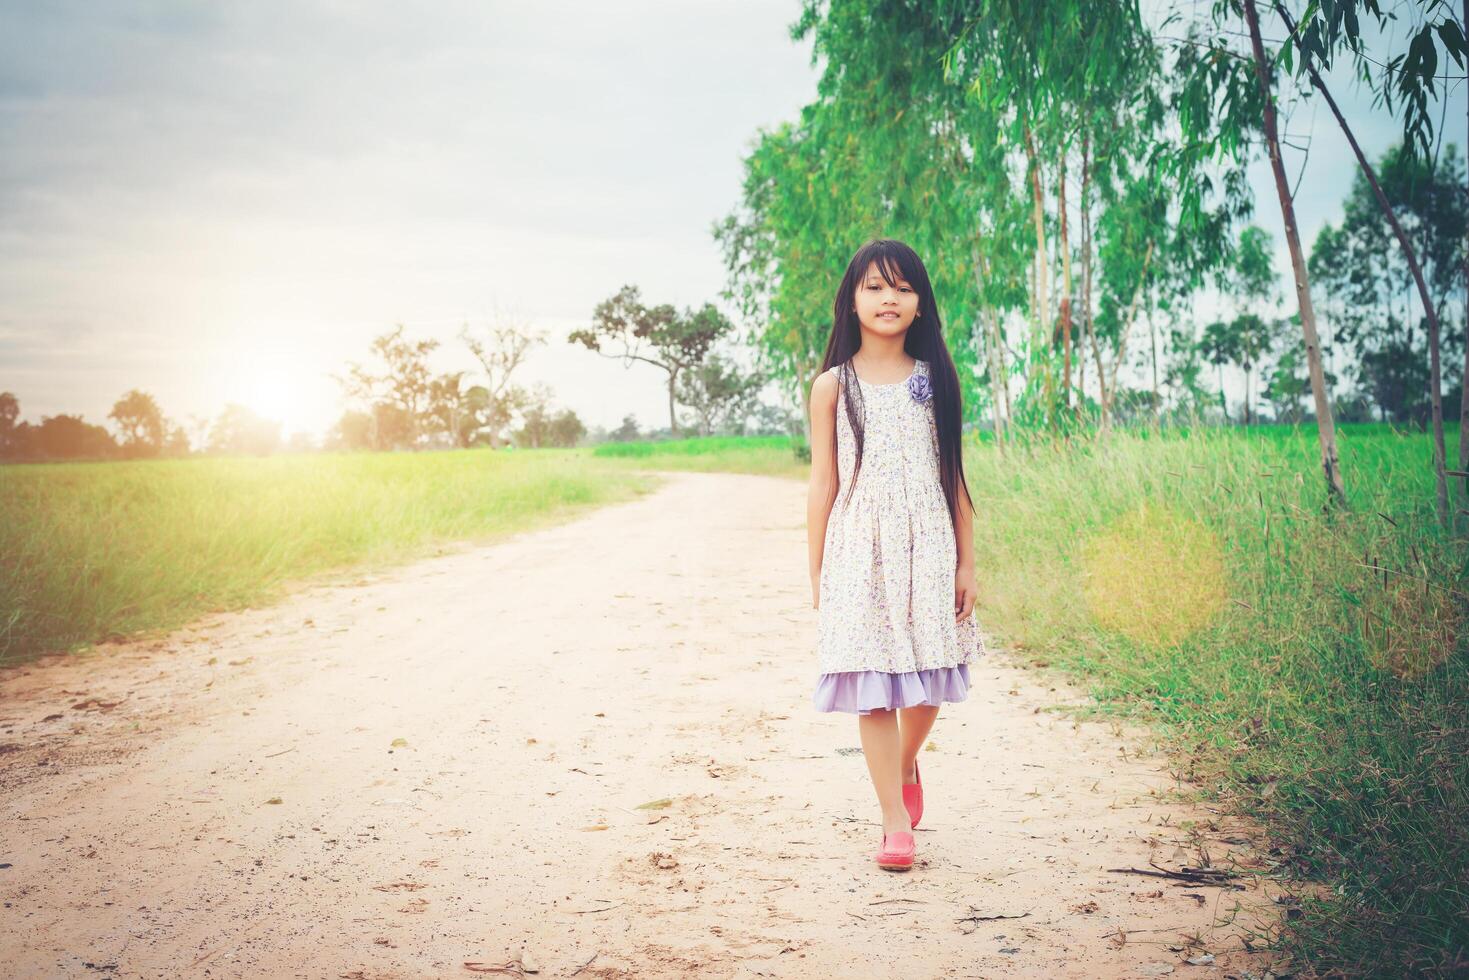 klein meisje met lang haar dat een jurk draagt, loopt van je weg op een landelijke weg. foto